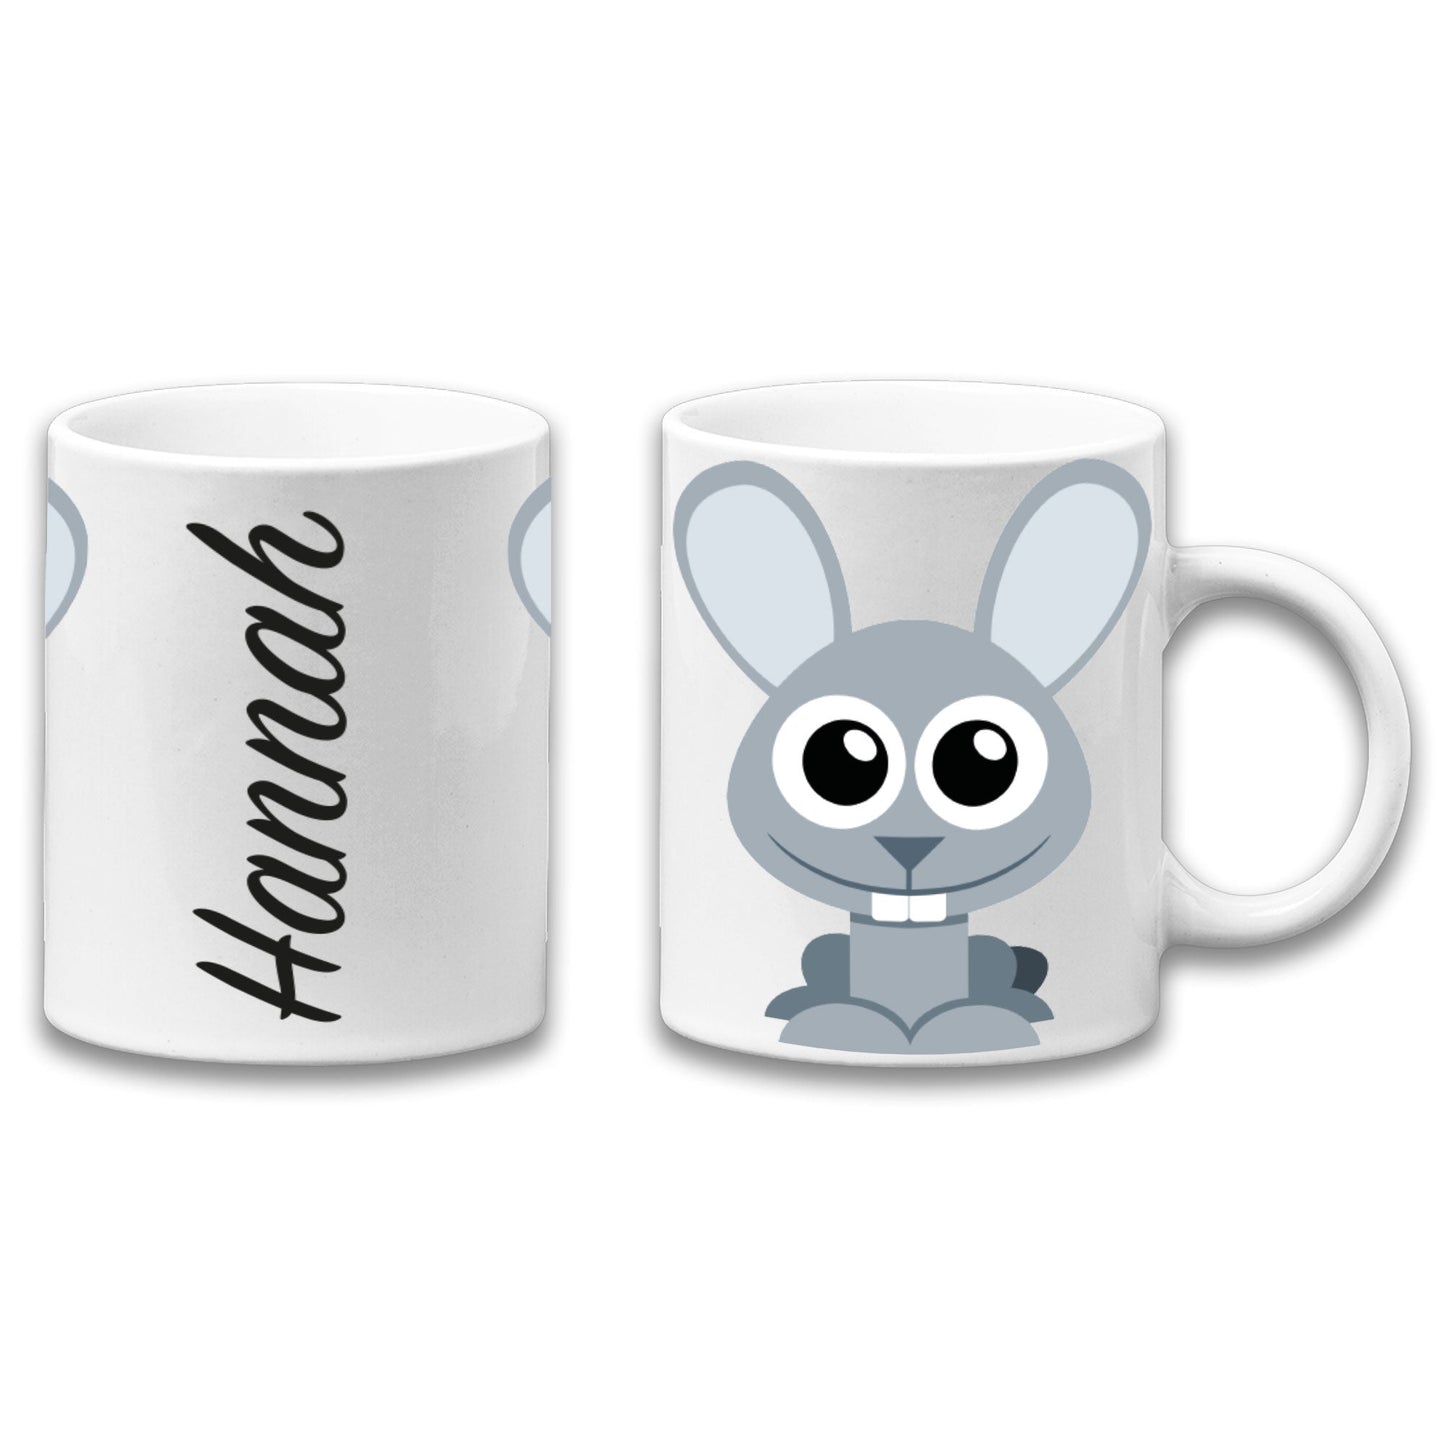 Adorable Bunny Personalised Your Name Gift Mug